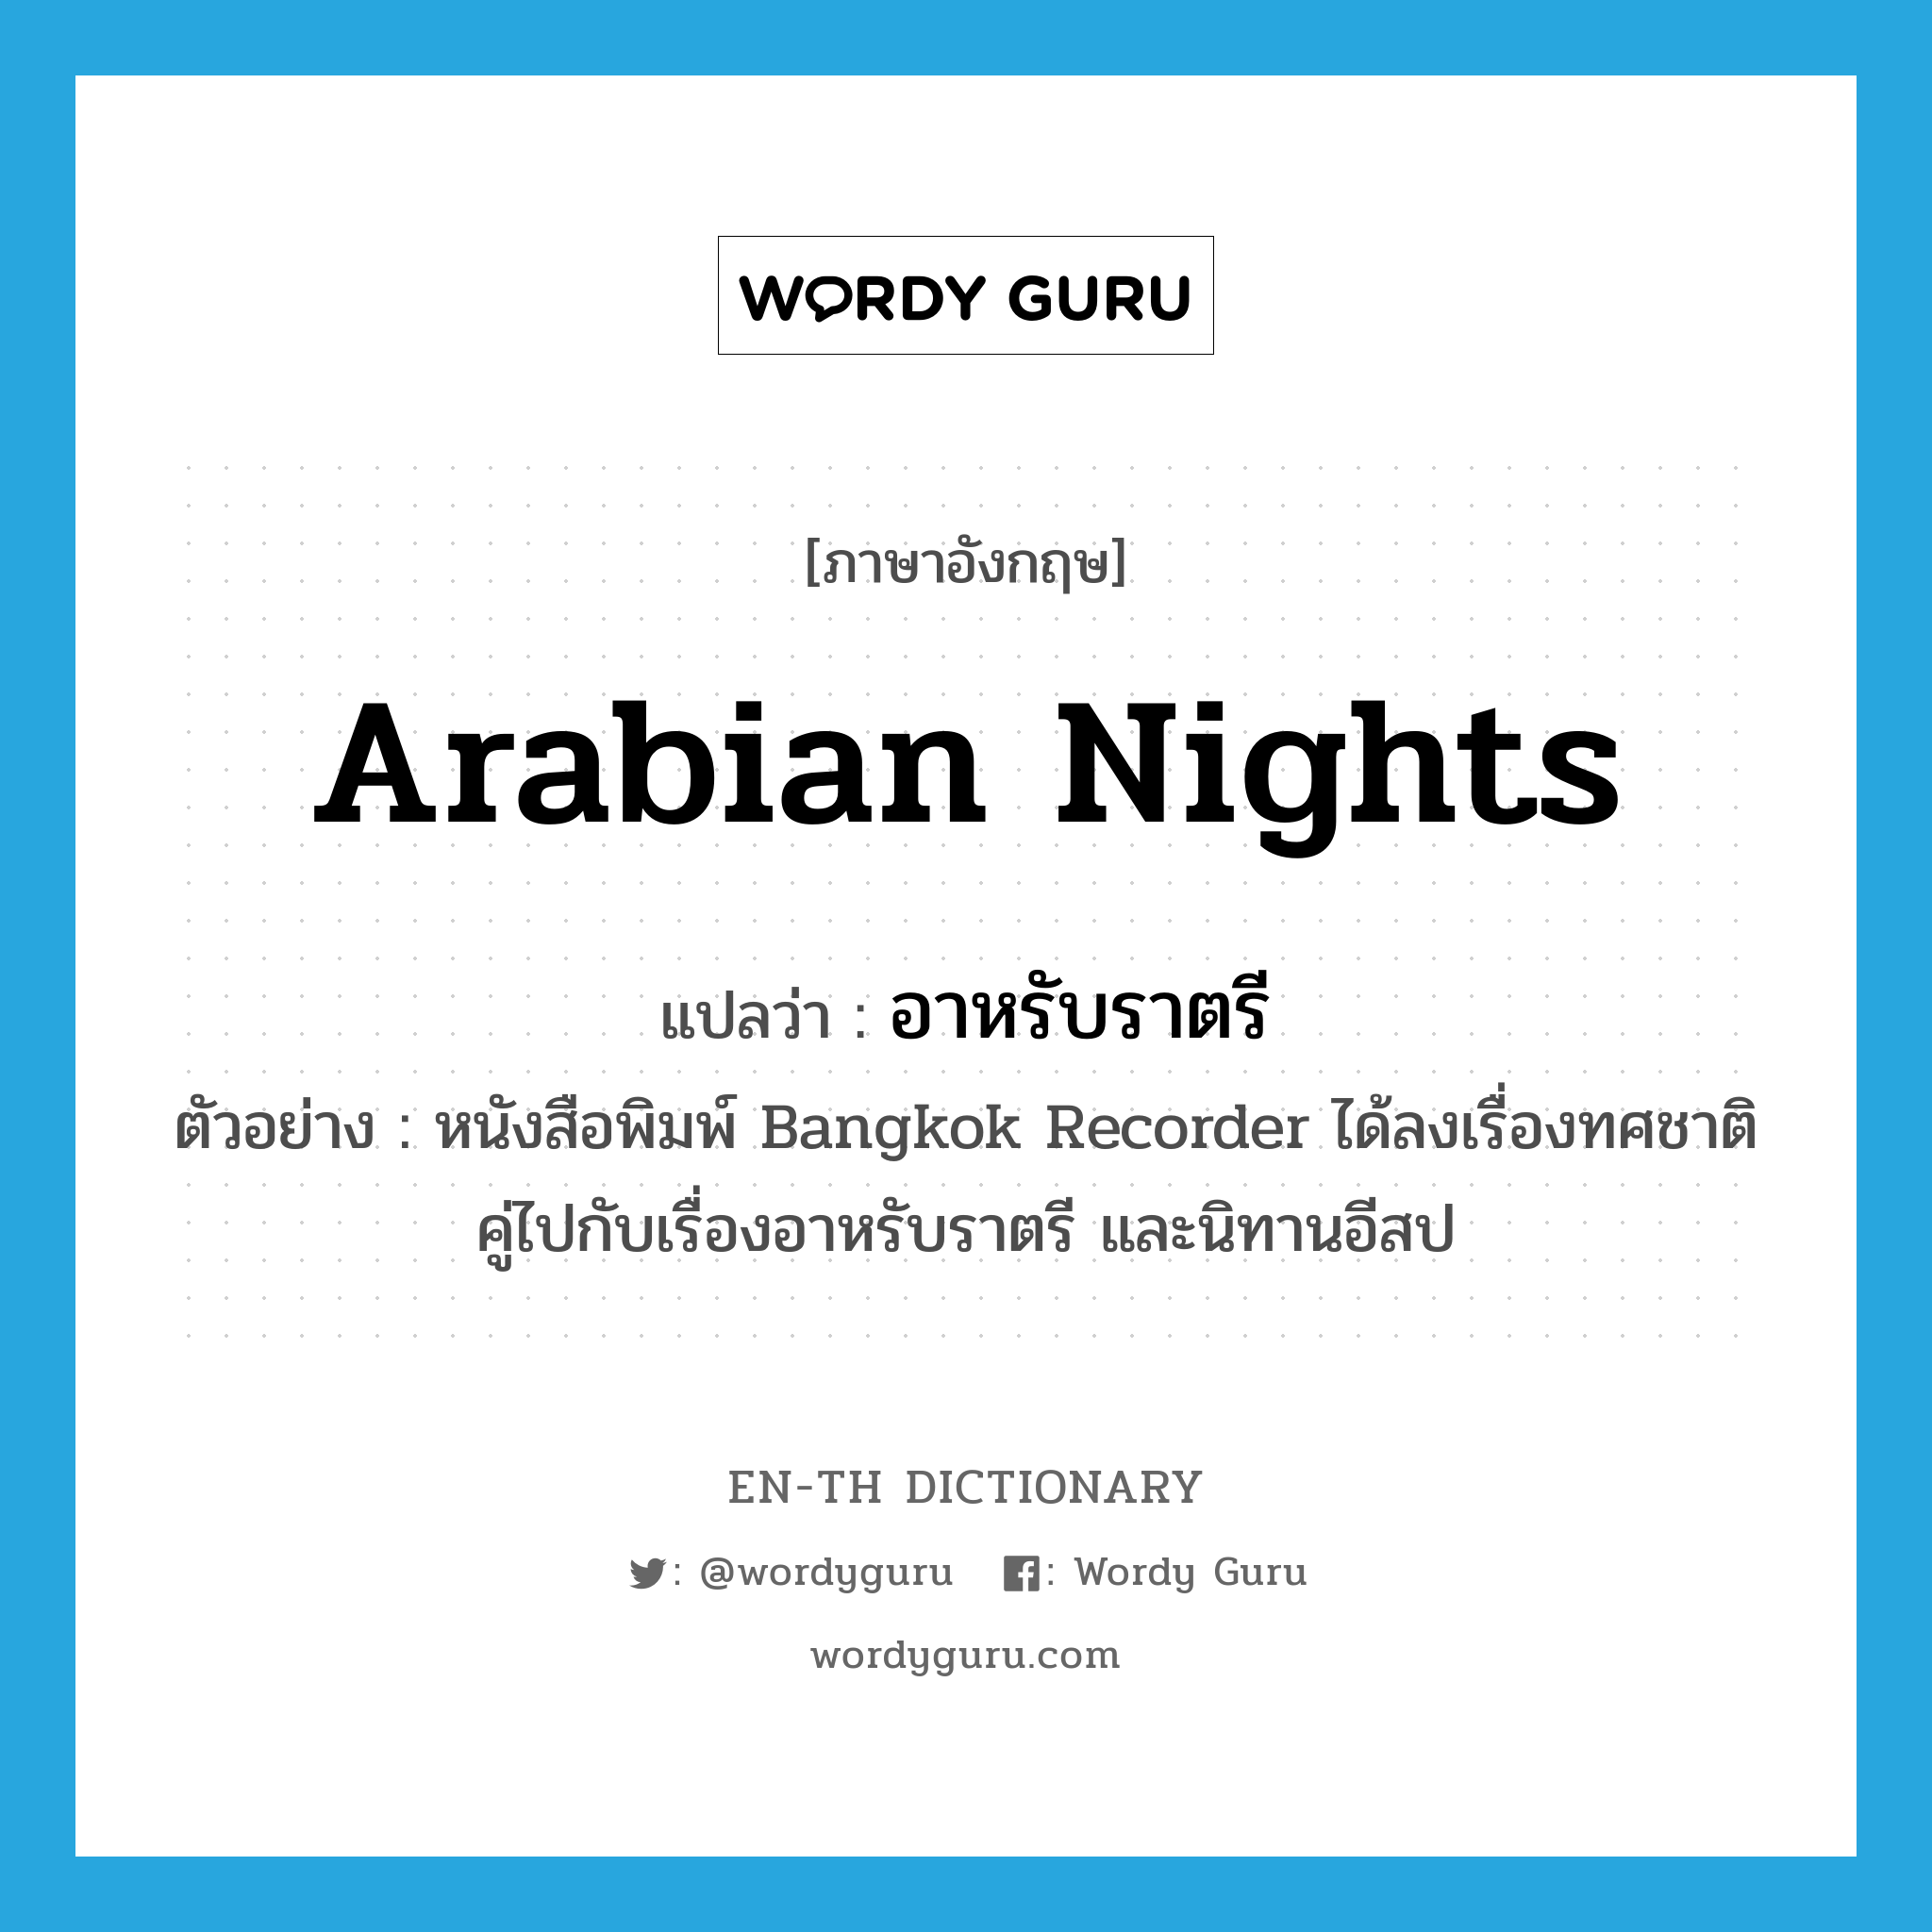 Arabian Nights แปลว่า?, คำศัพท์ภาษาอังกฤษ Arabian Nights แปลว่า อาหรับราตรี ประเภท N ตัวอย่าง หนังสือพิมพ์ Bangkok Recorder ได้ลงเรื่องทศชาติคู่ไปกับเรื่องอาหรับราตรี และนิทานอีสป หมวด N